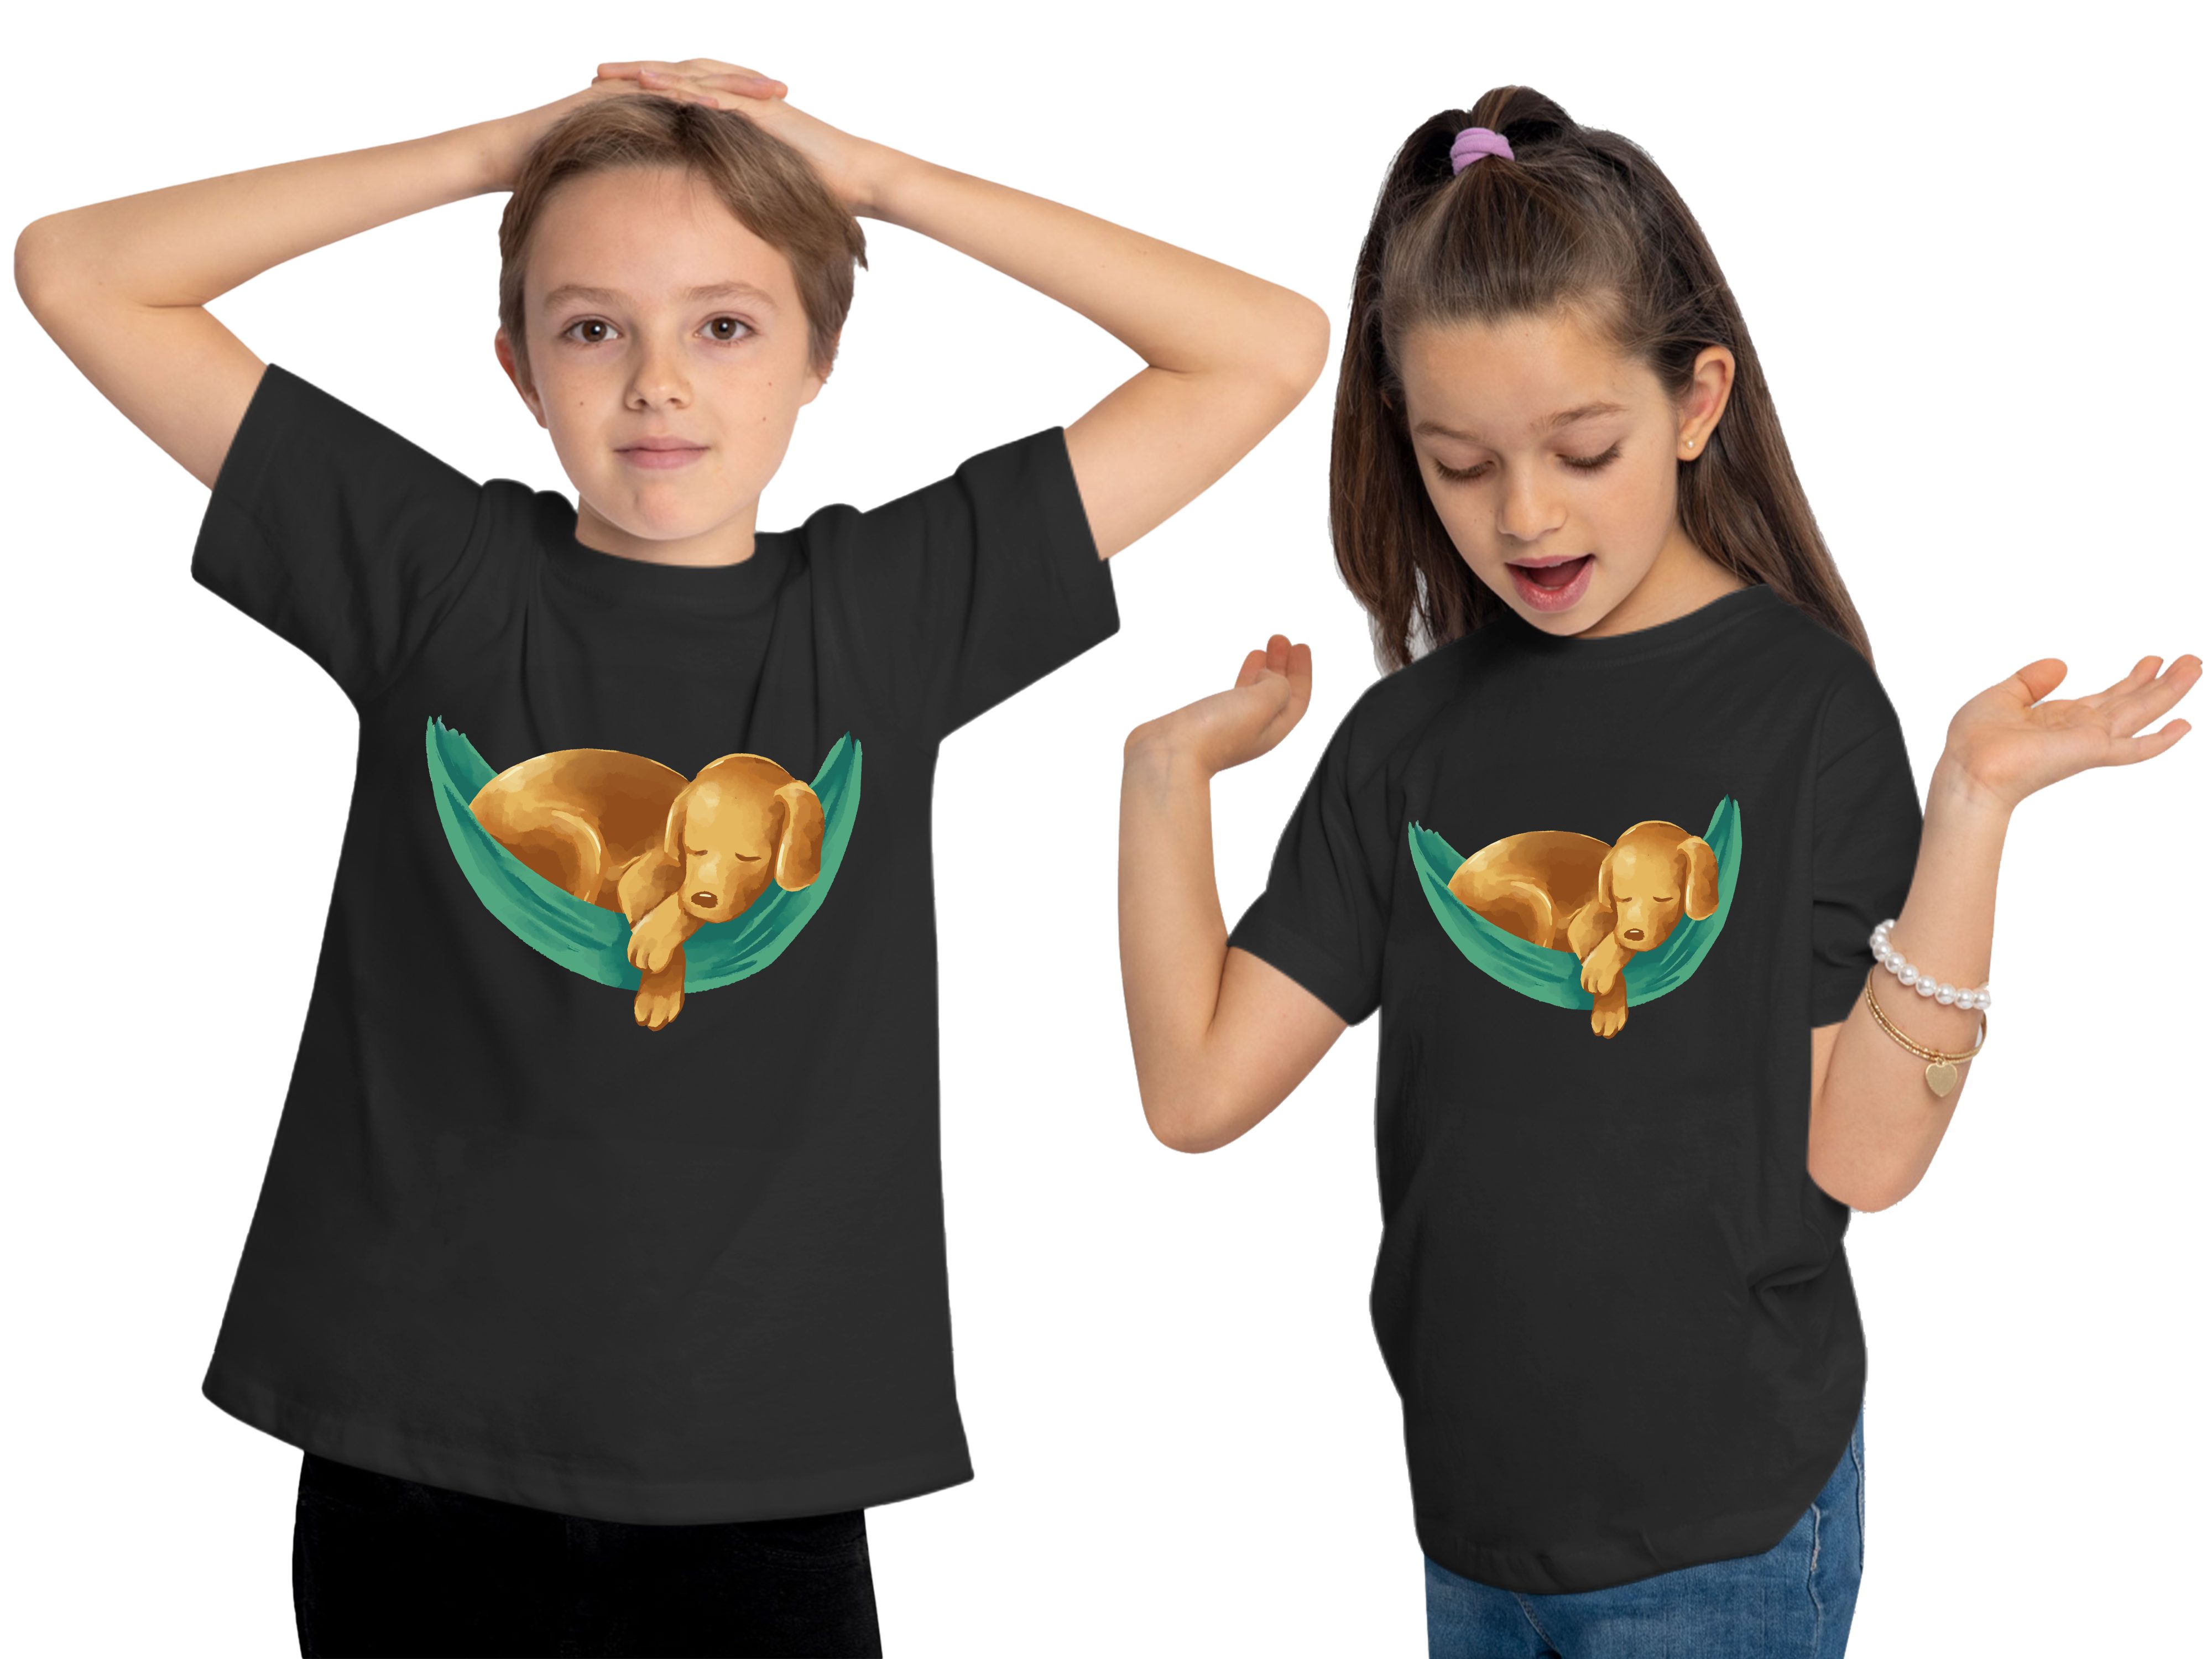 MyDesign24 T-Shirt Kinder Hunde bedruckt in Aufdruck, Shirt i245 - Baumwollshirt schwarz mit Print Labrador Welpe Hängematte